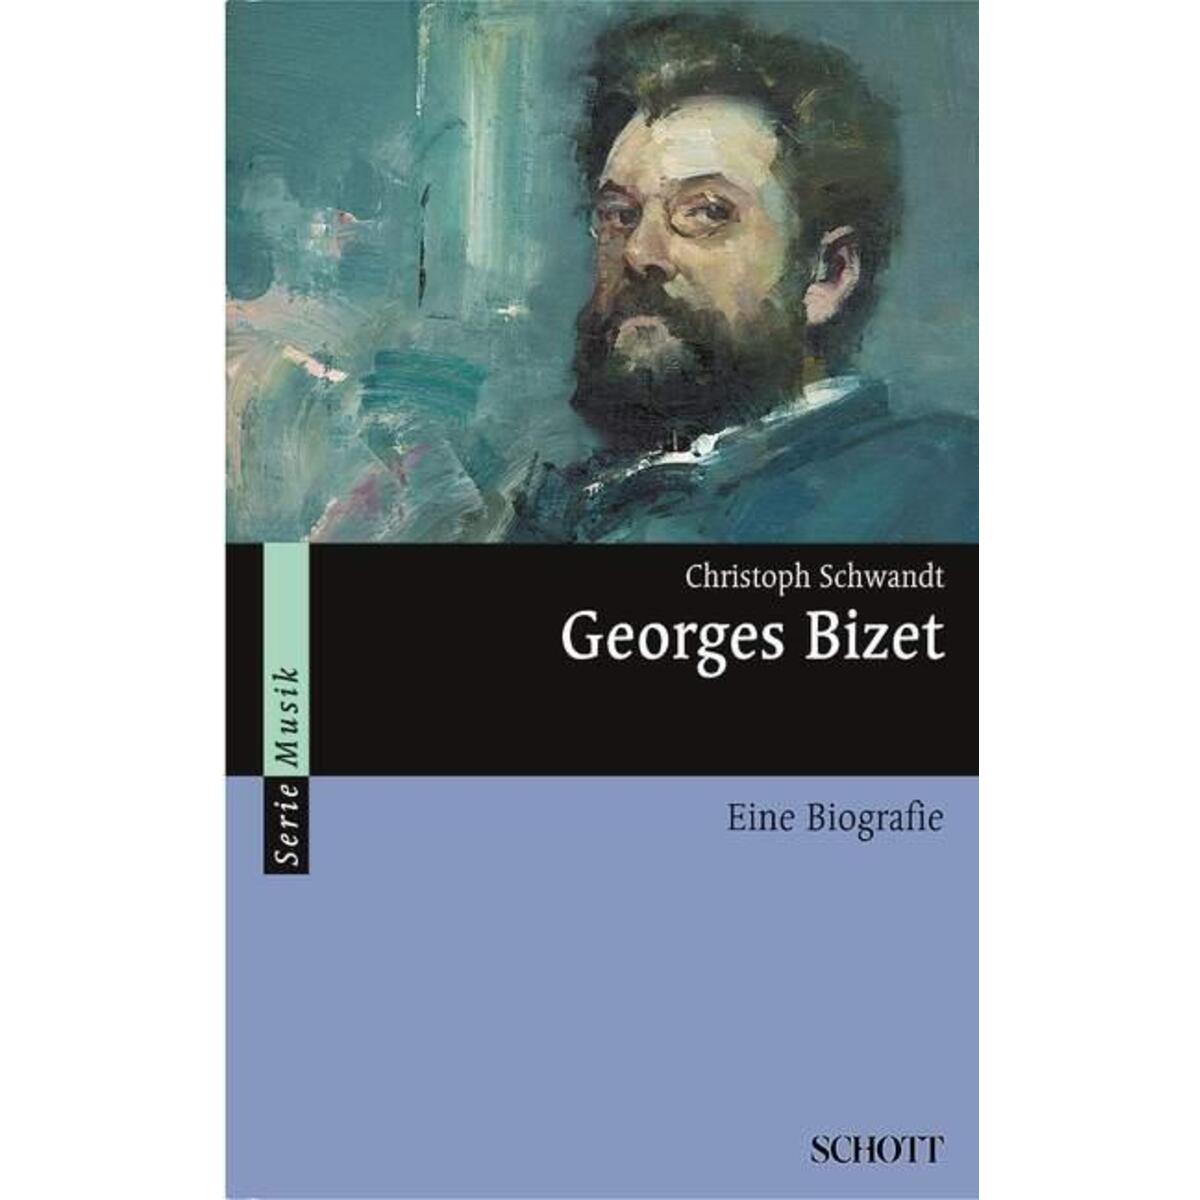 Georges Bizet von Schott Music